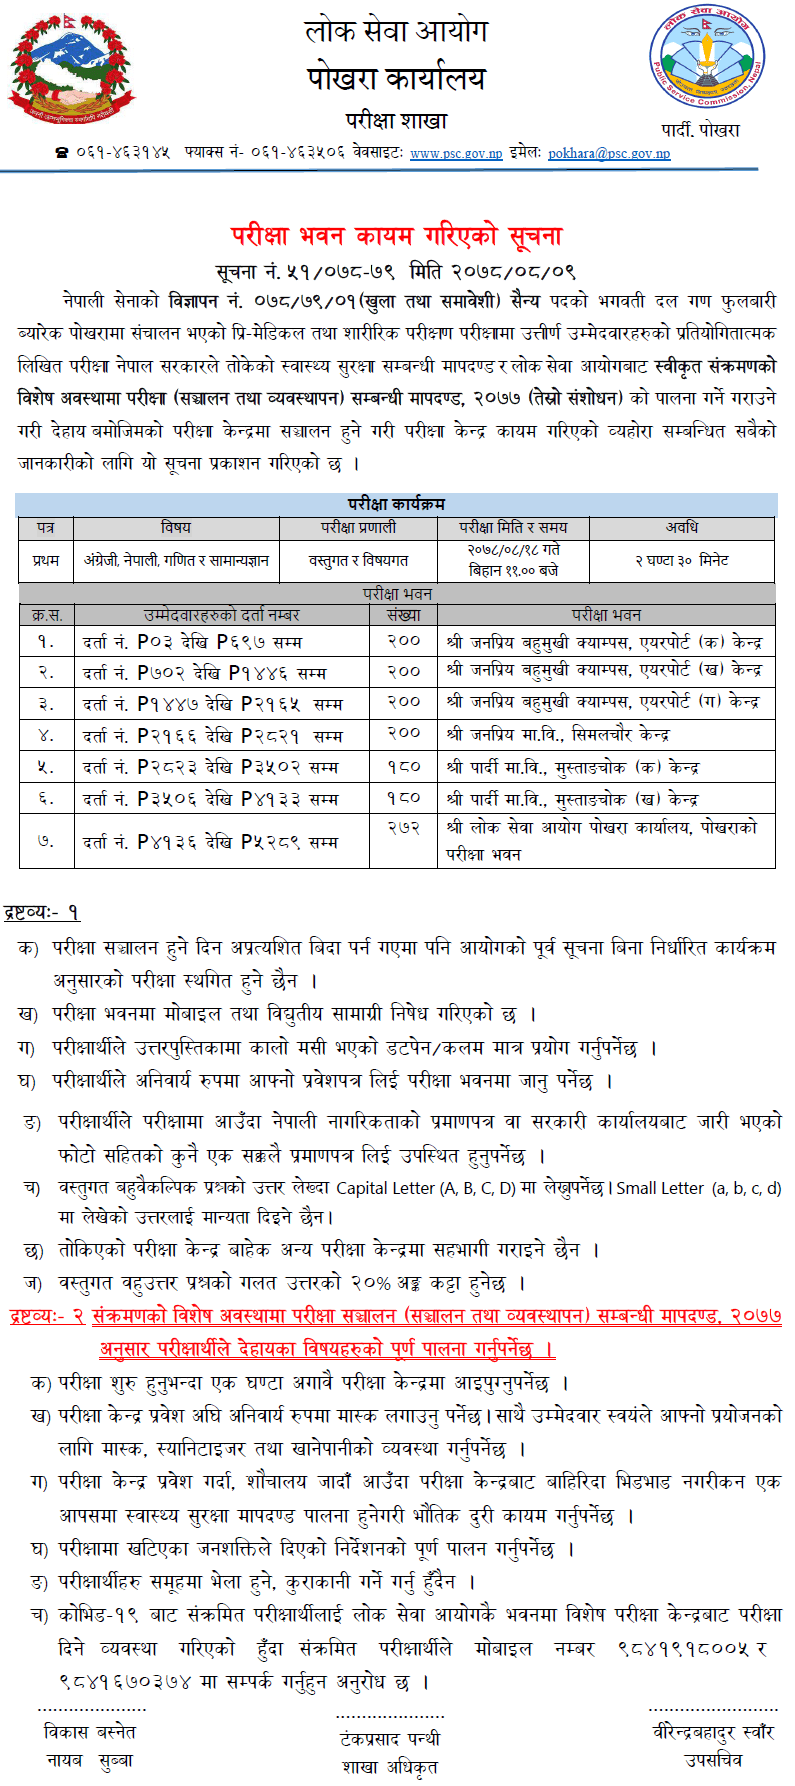 Nepal Army Sainya Post Written Exam Center Pokhara